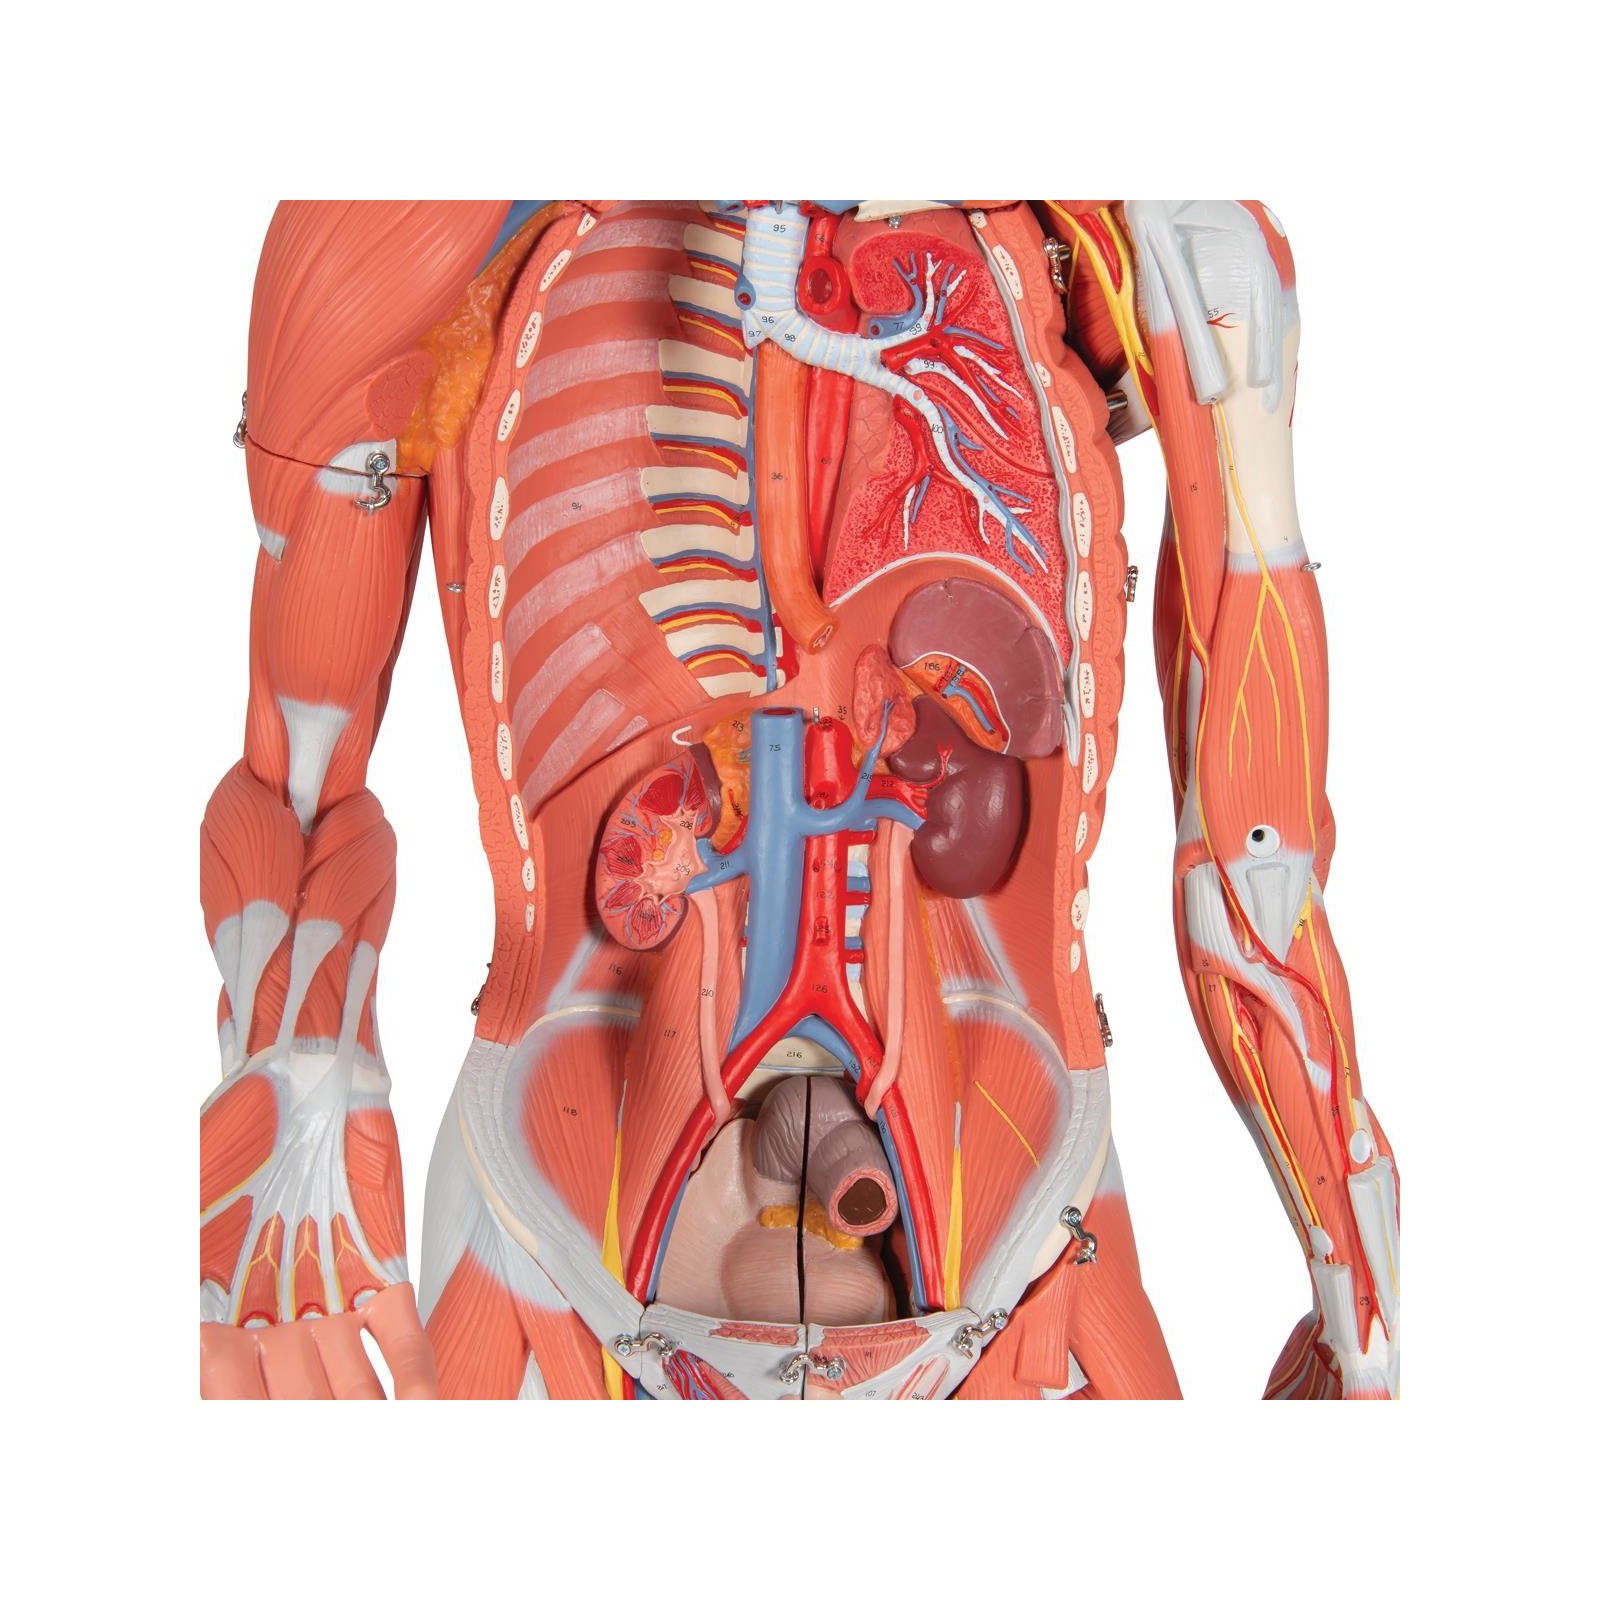 Фото анатомии человека женщин внутренних органов. Фигура с мышцами, двуполая, 45 частей. Анатомия человека. Пеатмоич человнка.